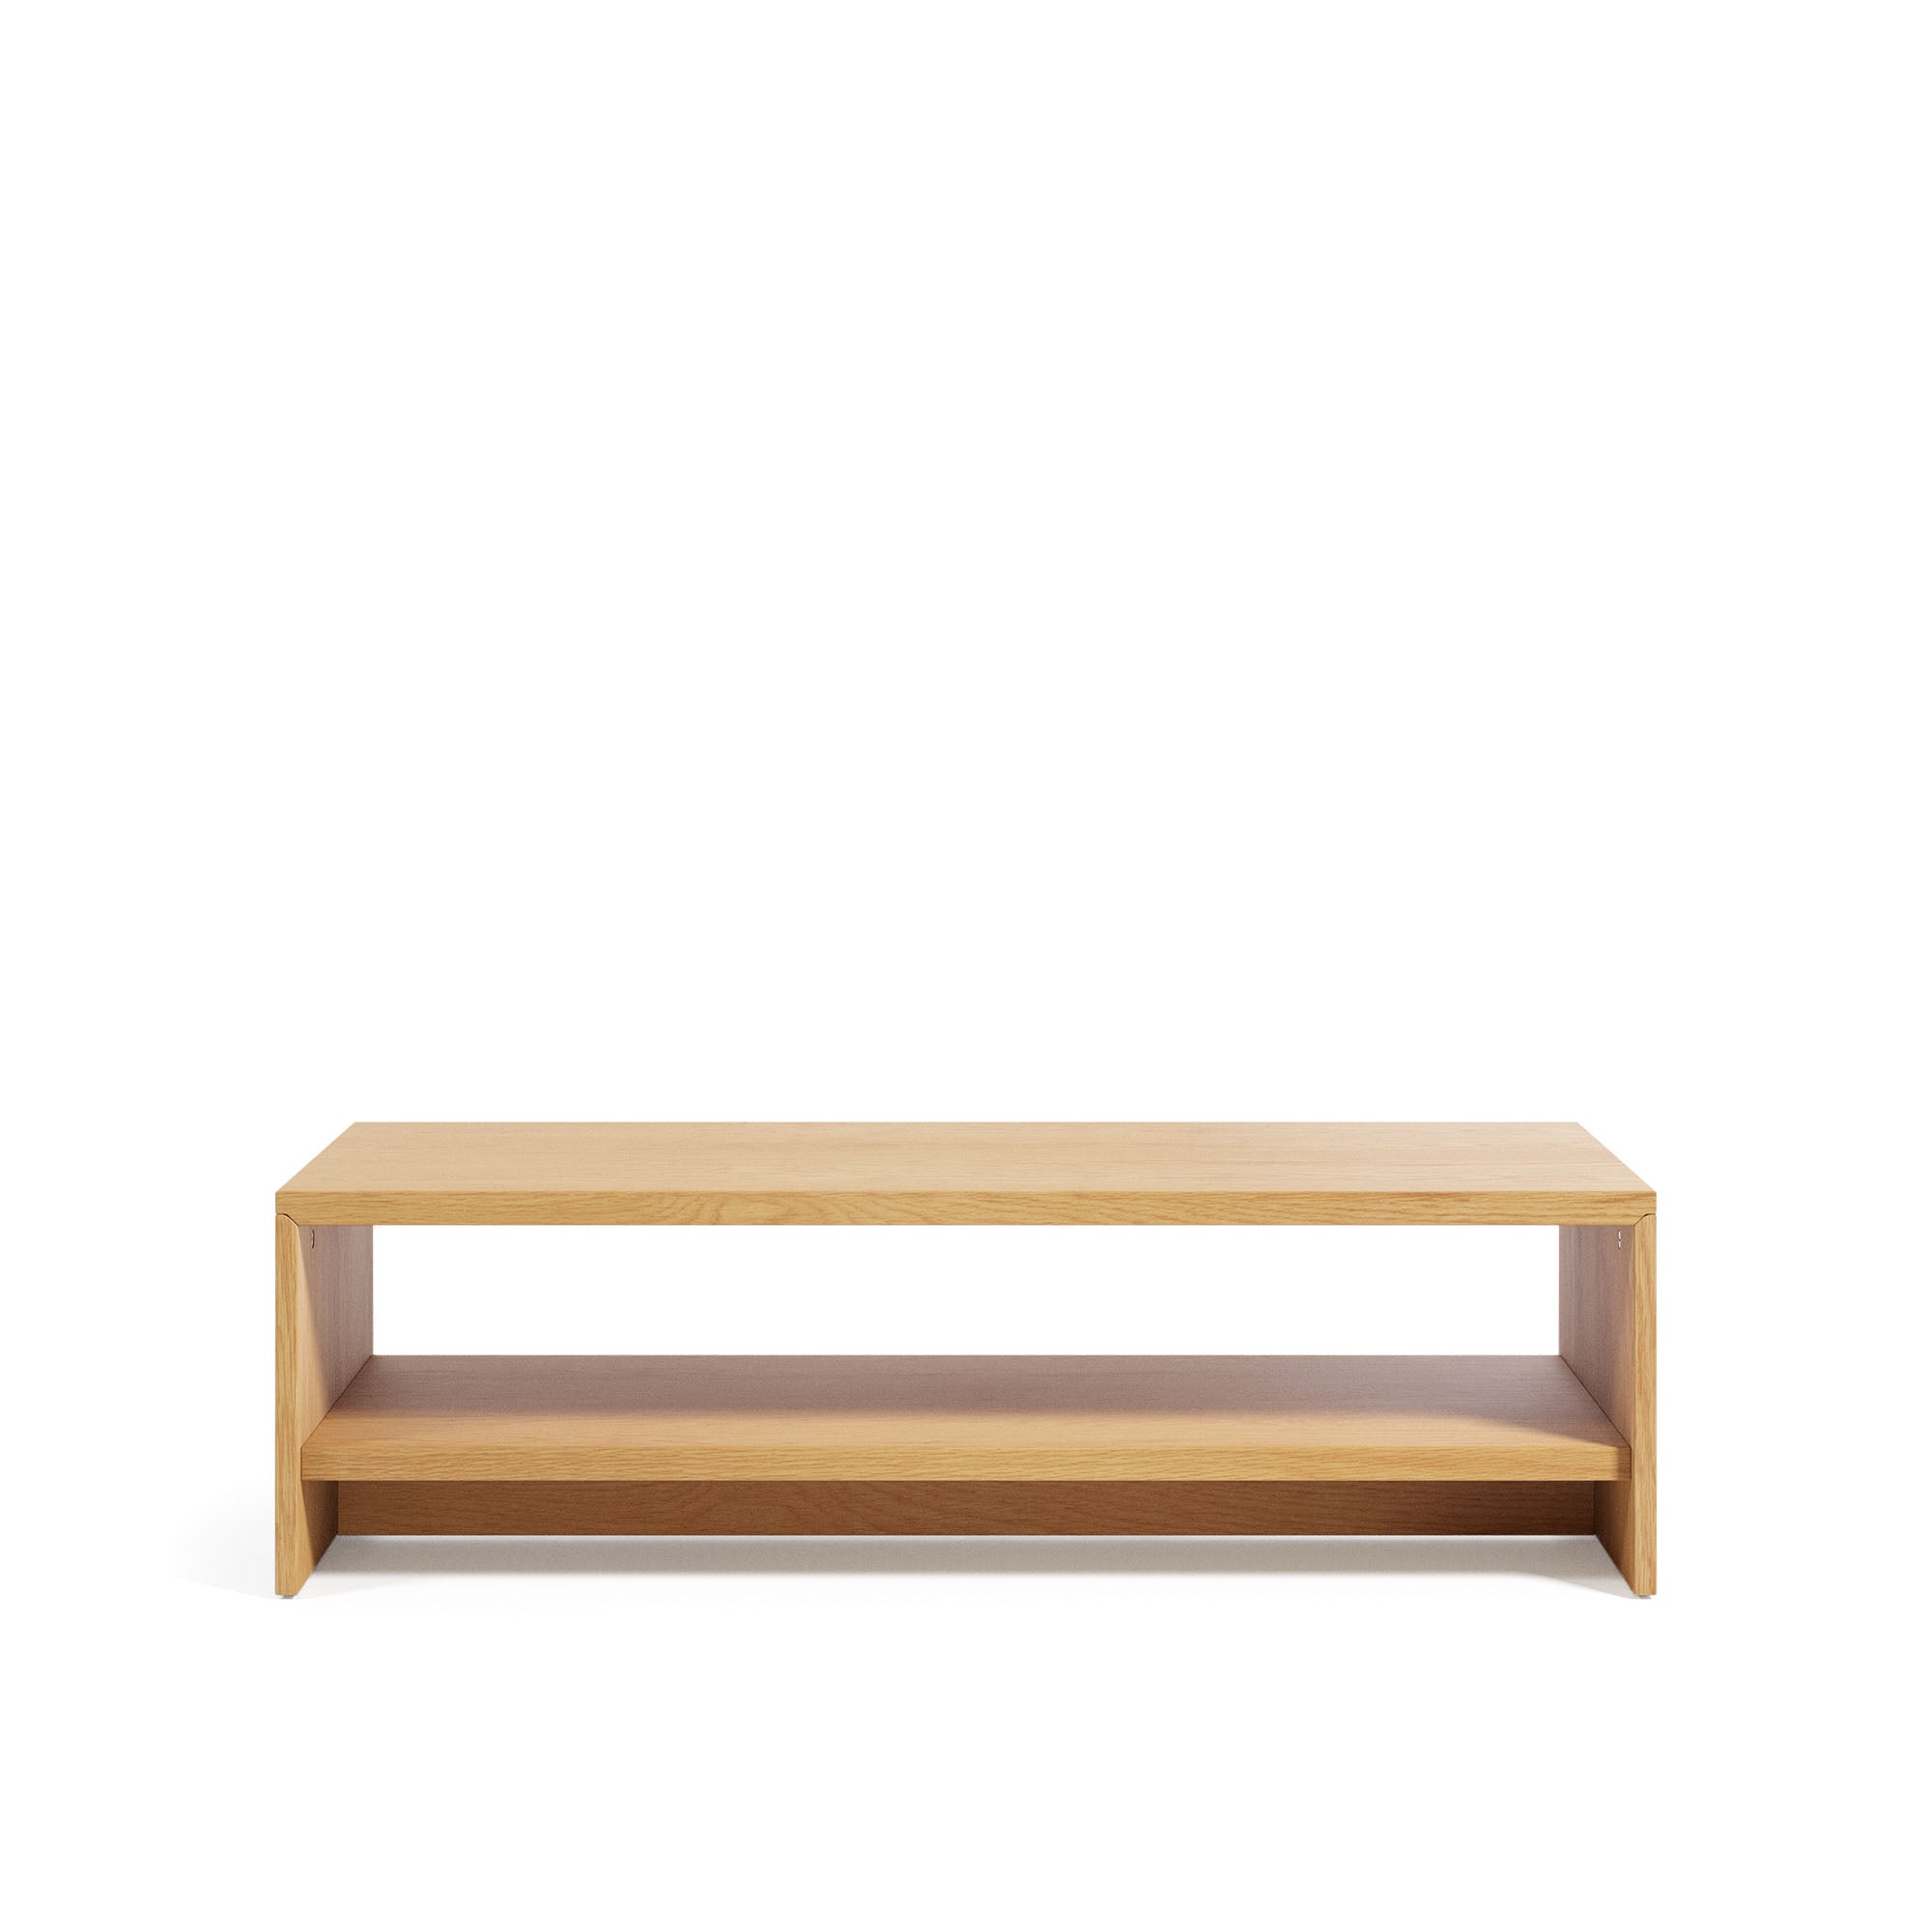 Abilen oak wood veneer coffee table 120 x 60 FSC 100%